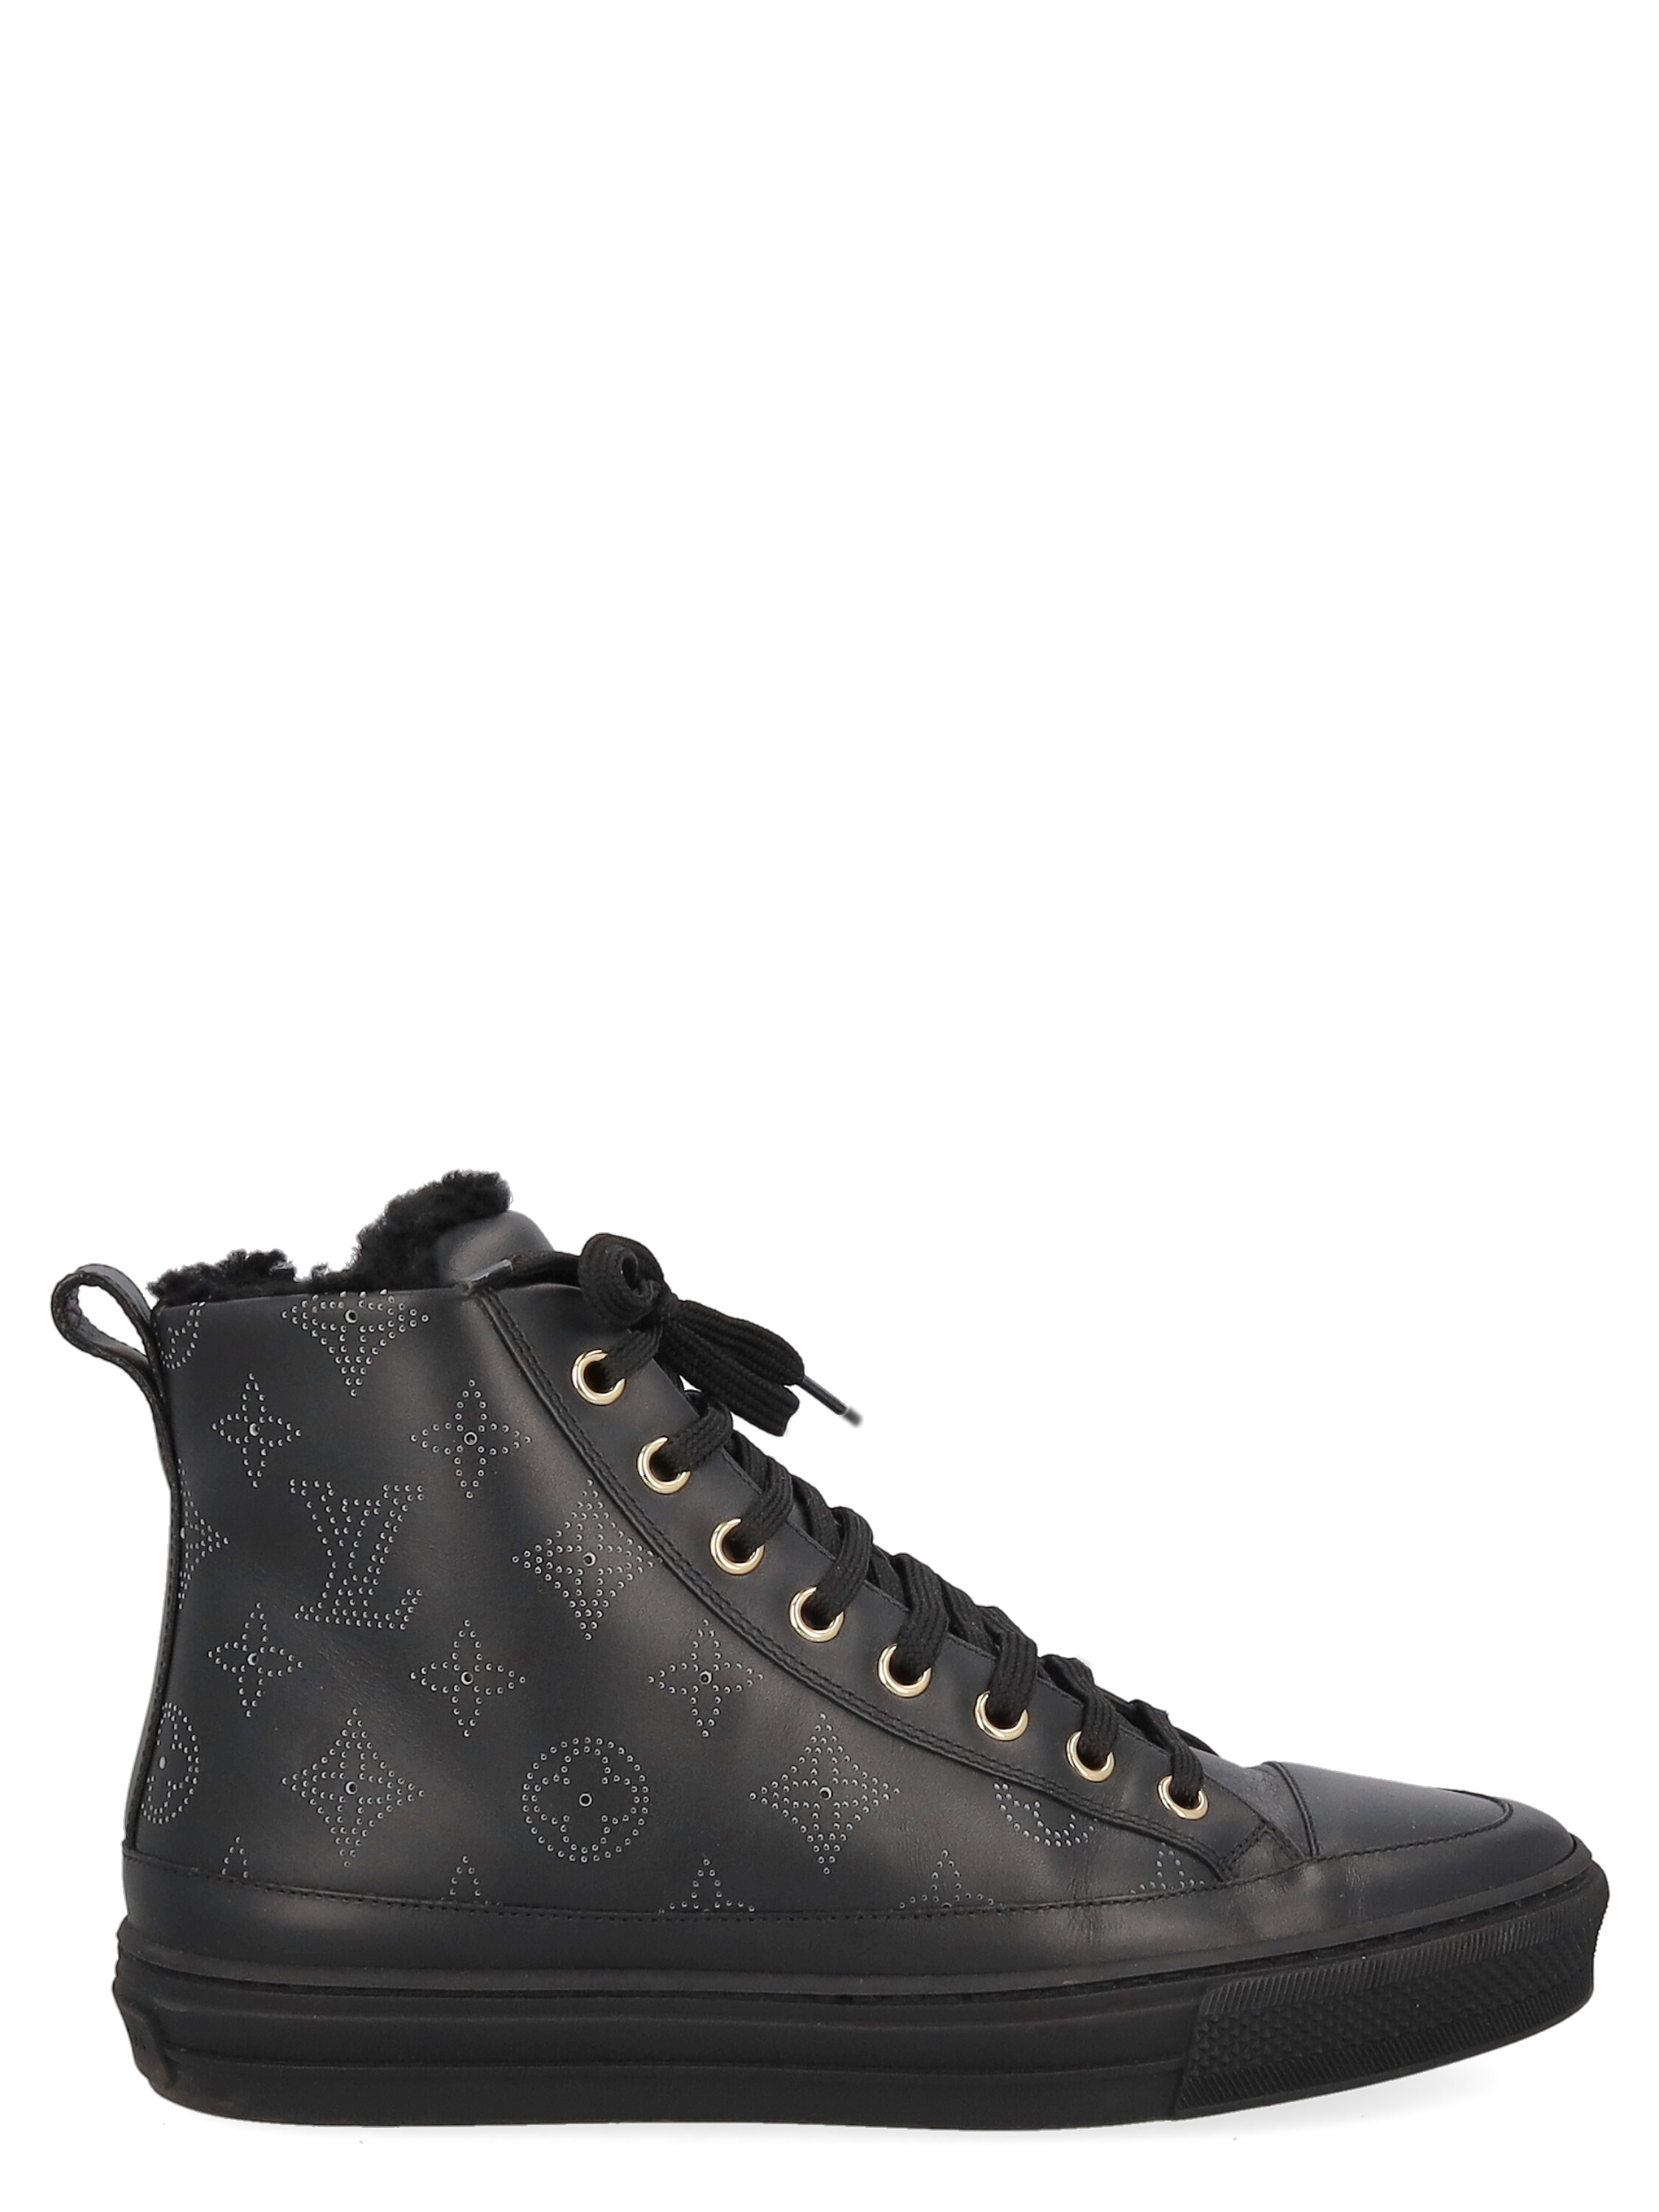 Sneakers Pour Femme - Louis Vuitton - En Leather Black - Taille: IT 37.5 - EU 37.5